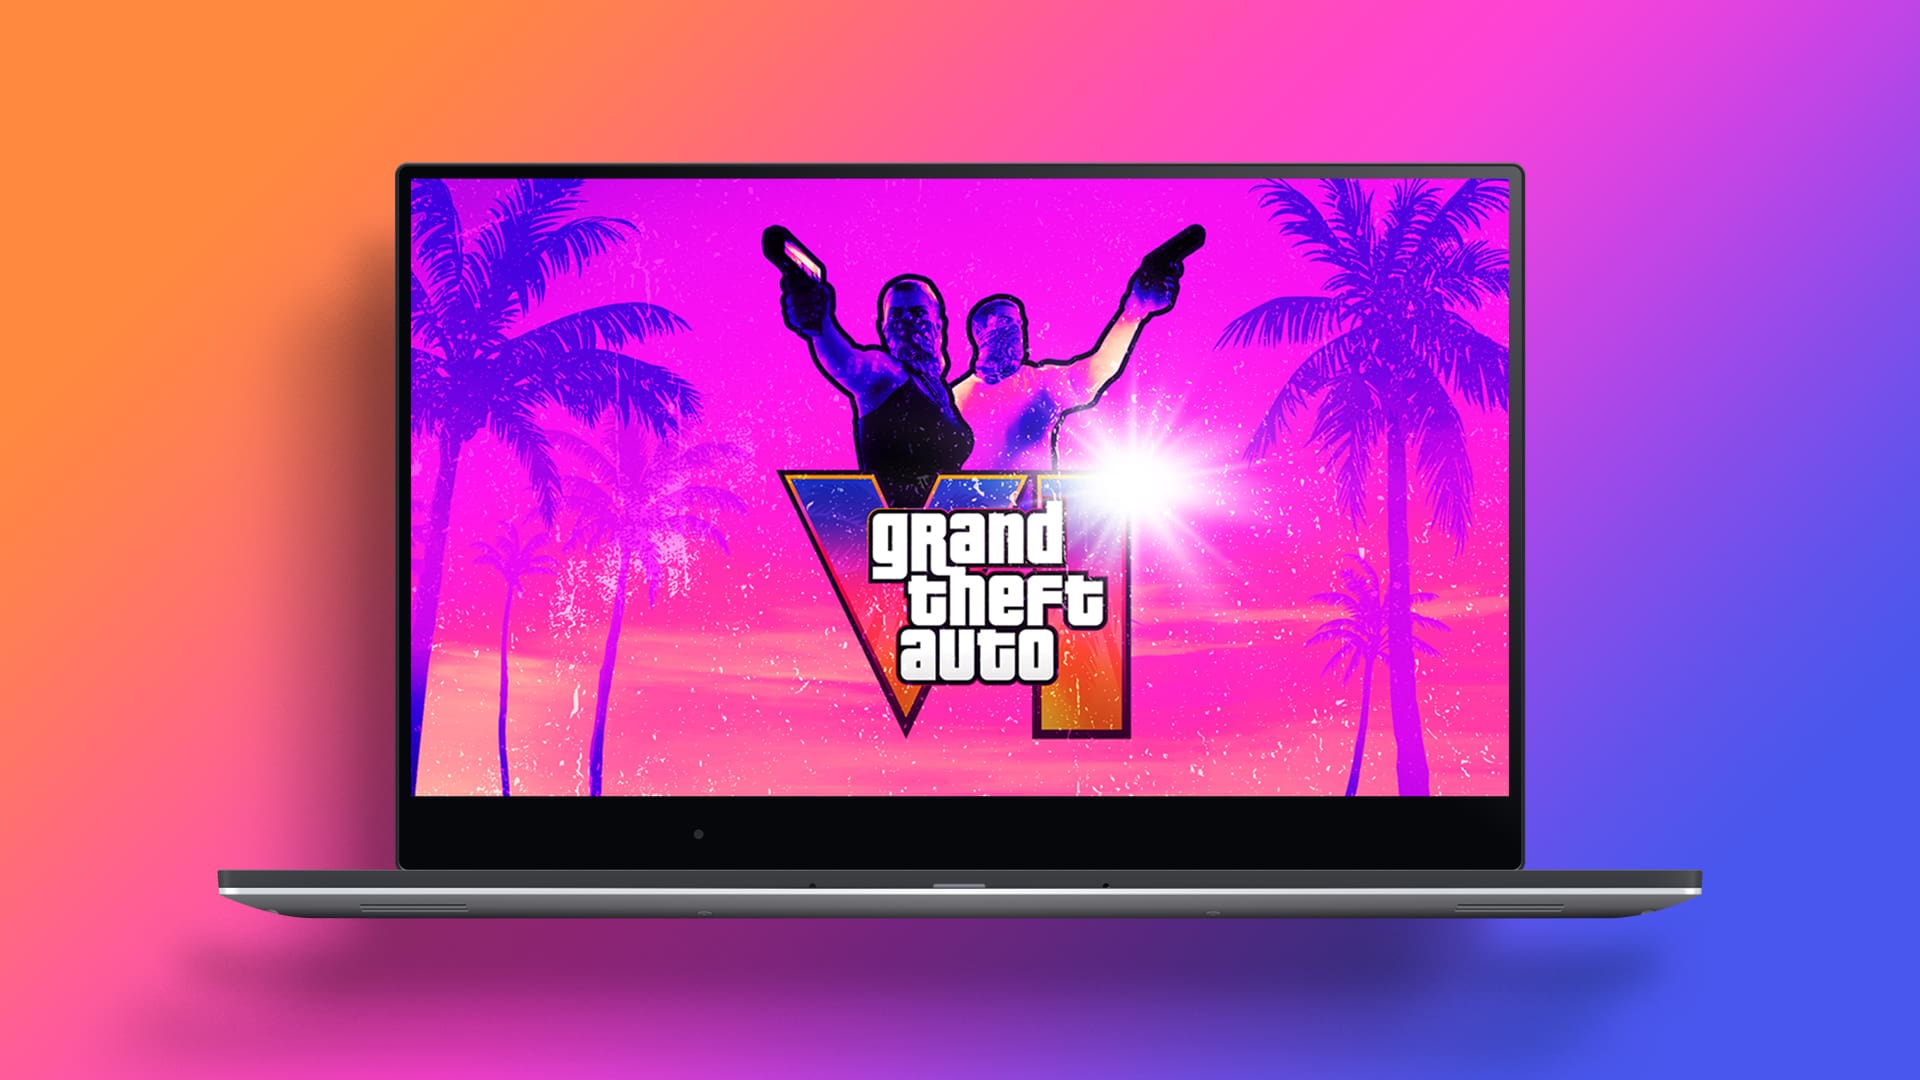 Grand Theft Auto VI Wallpaper With Logo